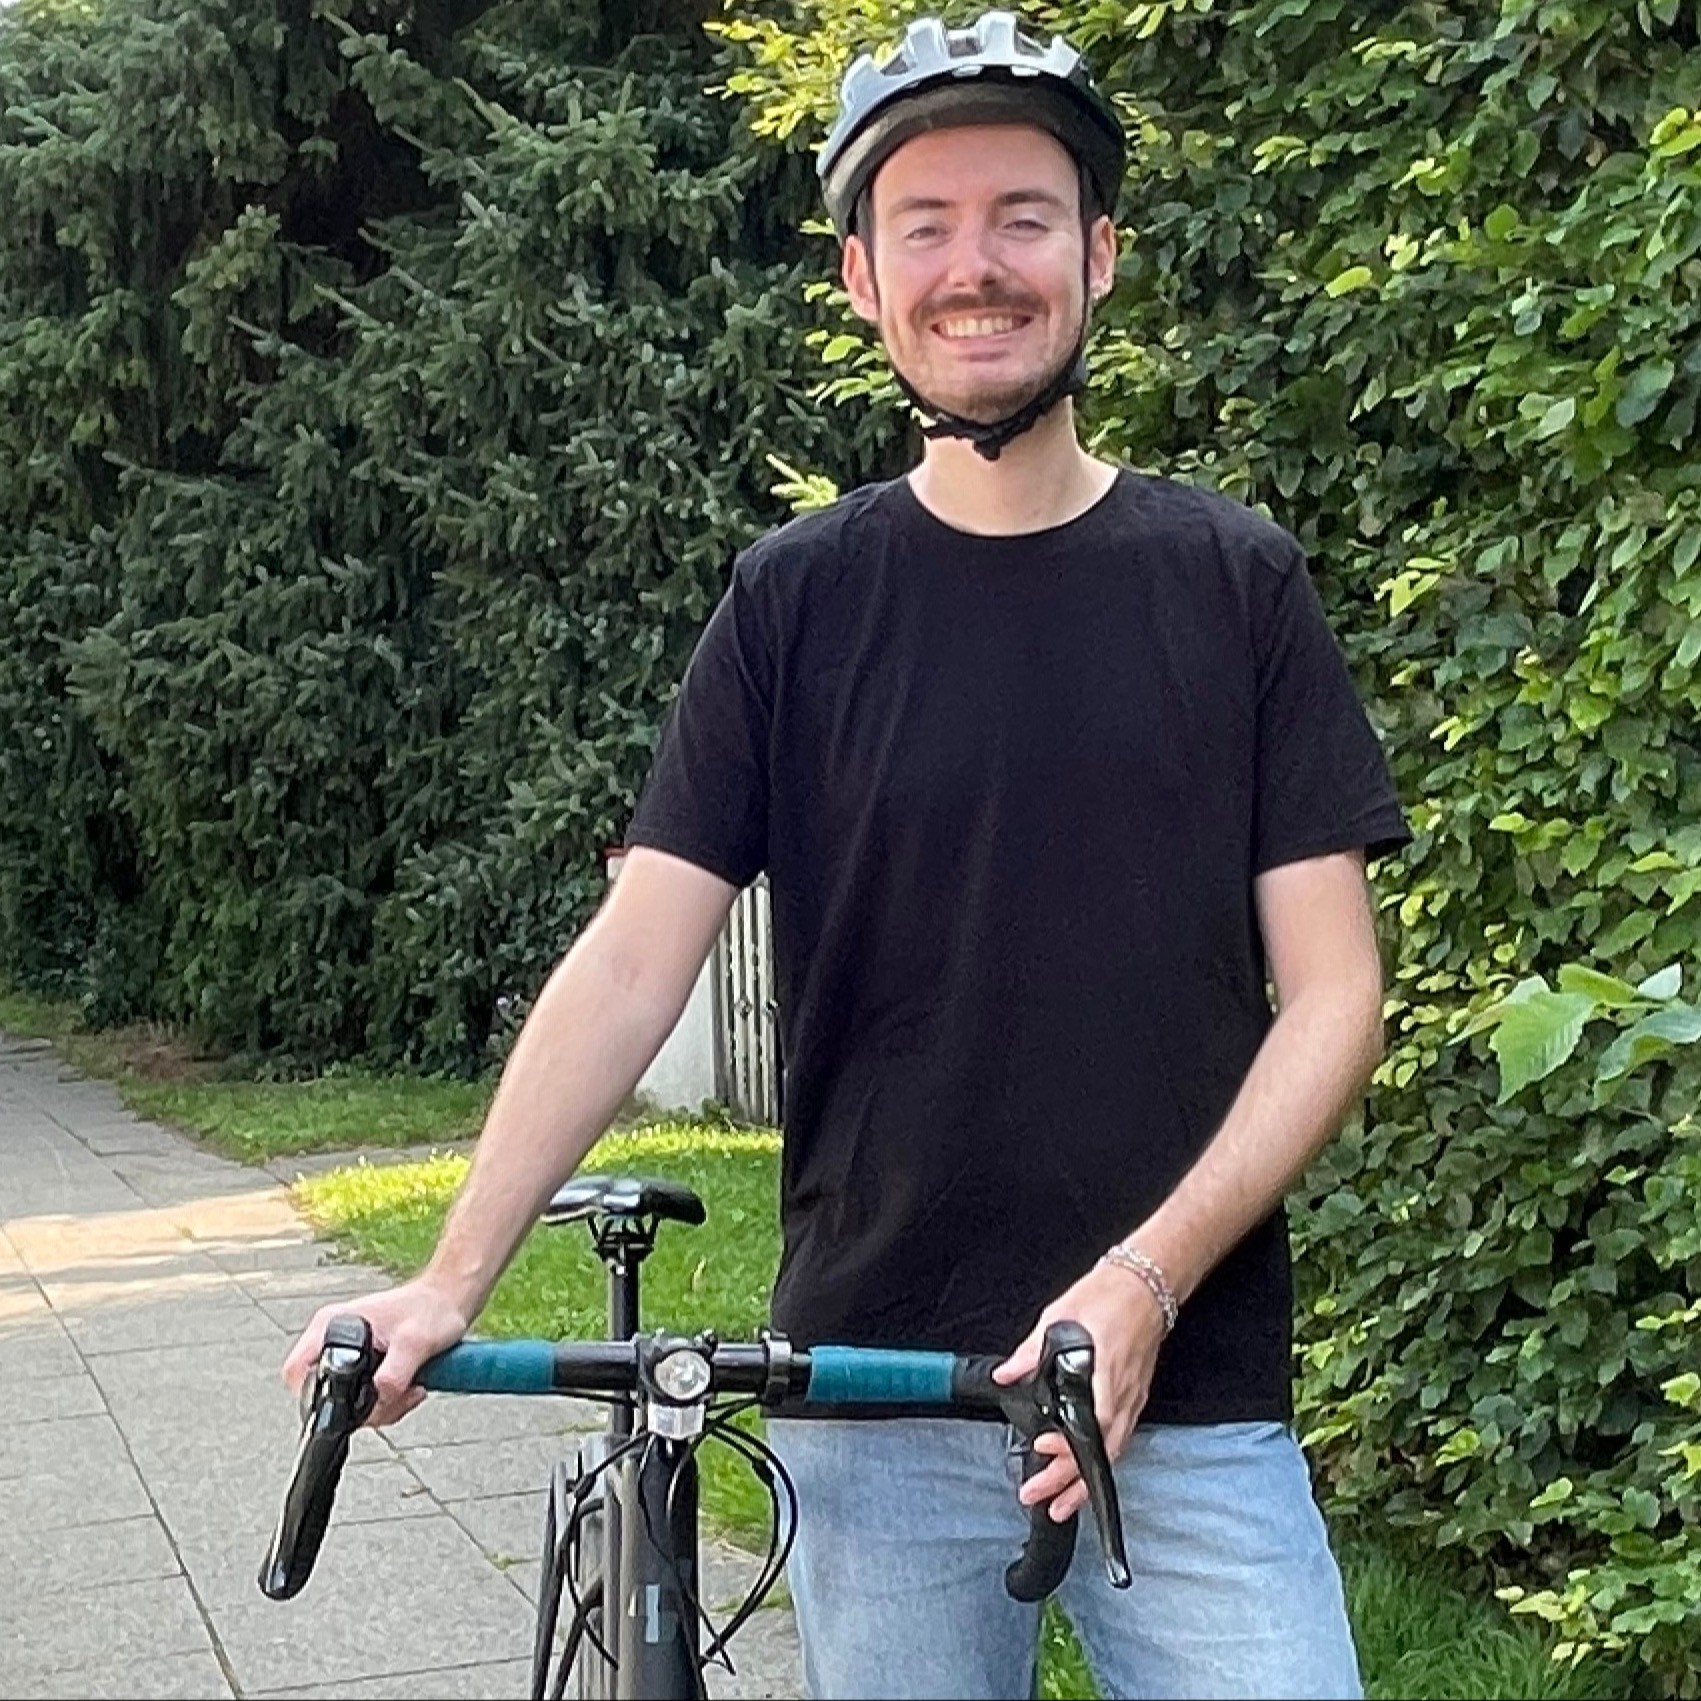 Ein junger Mann steht neben seinem Fahrrad und lacht freundlich. Hinter ihm sieht man Bäume und hohe Büsche sowie eine Straße mit parkenden Autos. 